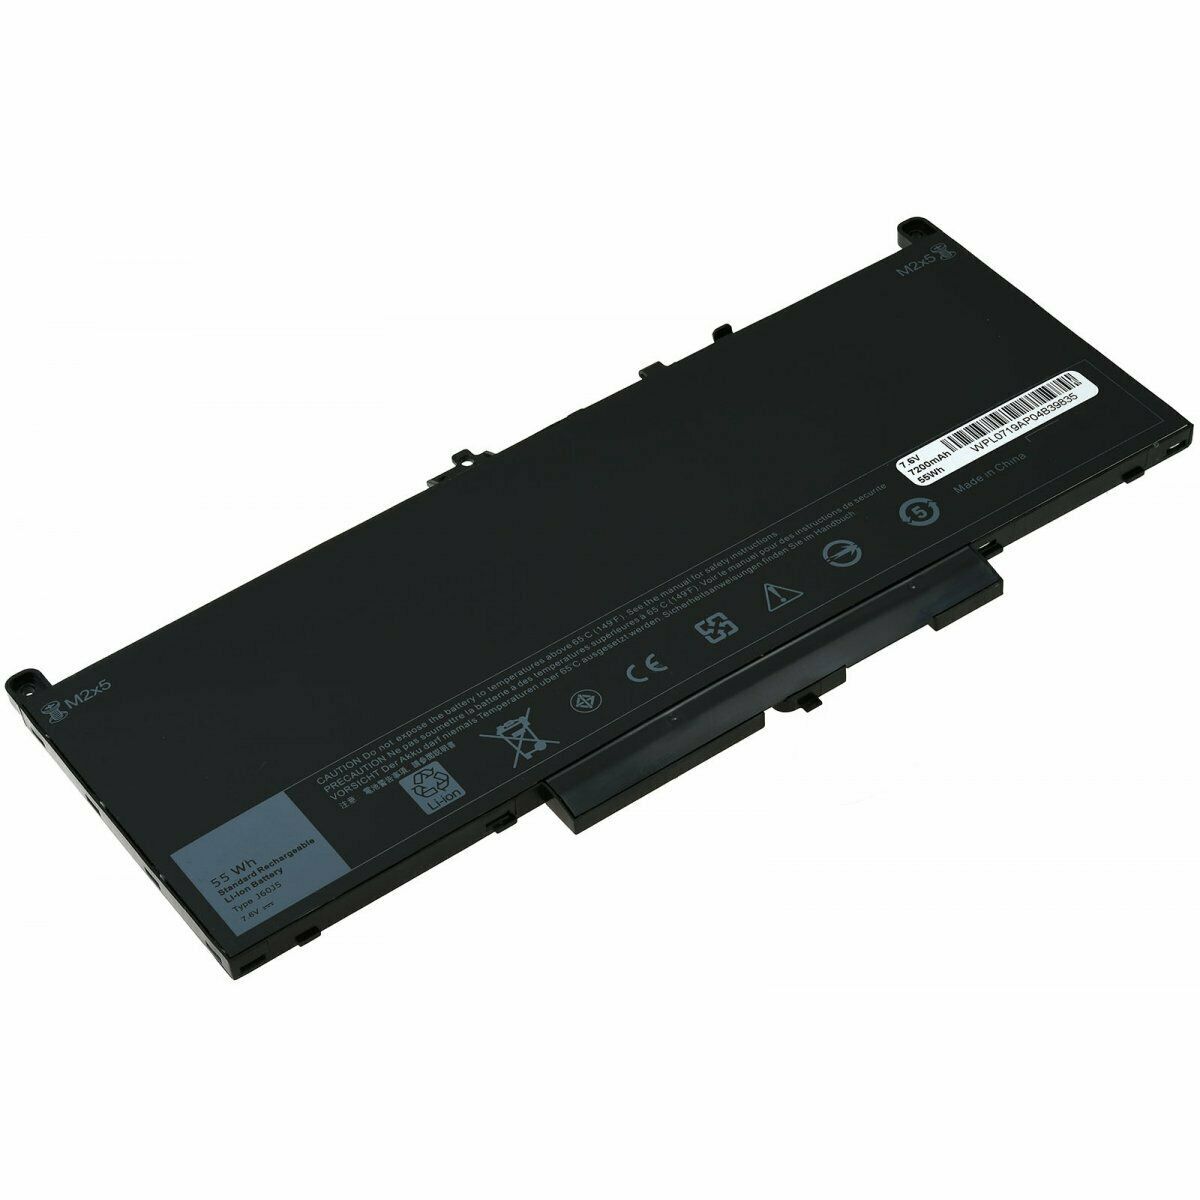 Dell Latitude E7270,E7470 0MC34Y 242WD J60J5 MC34Y kompatibelt batterier - Trykk på bildet for å lukke